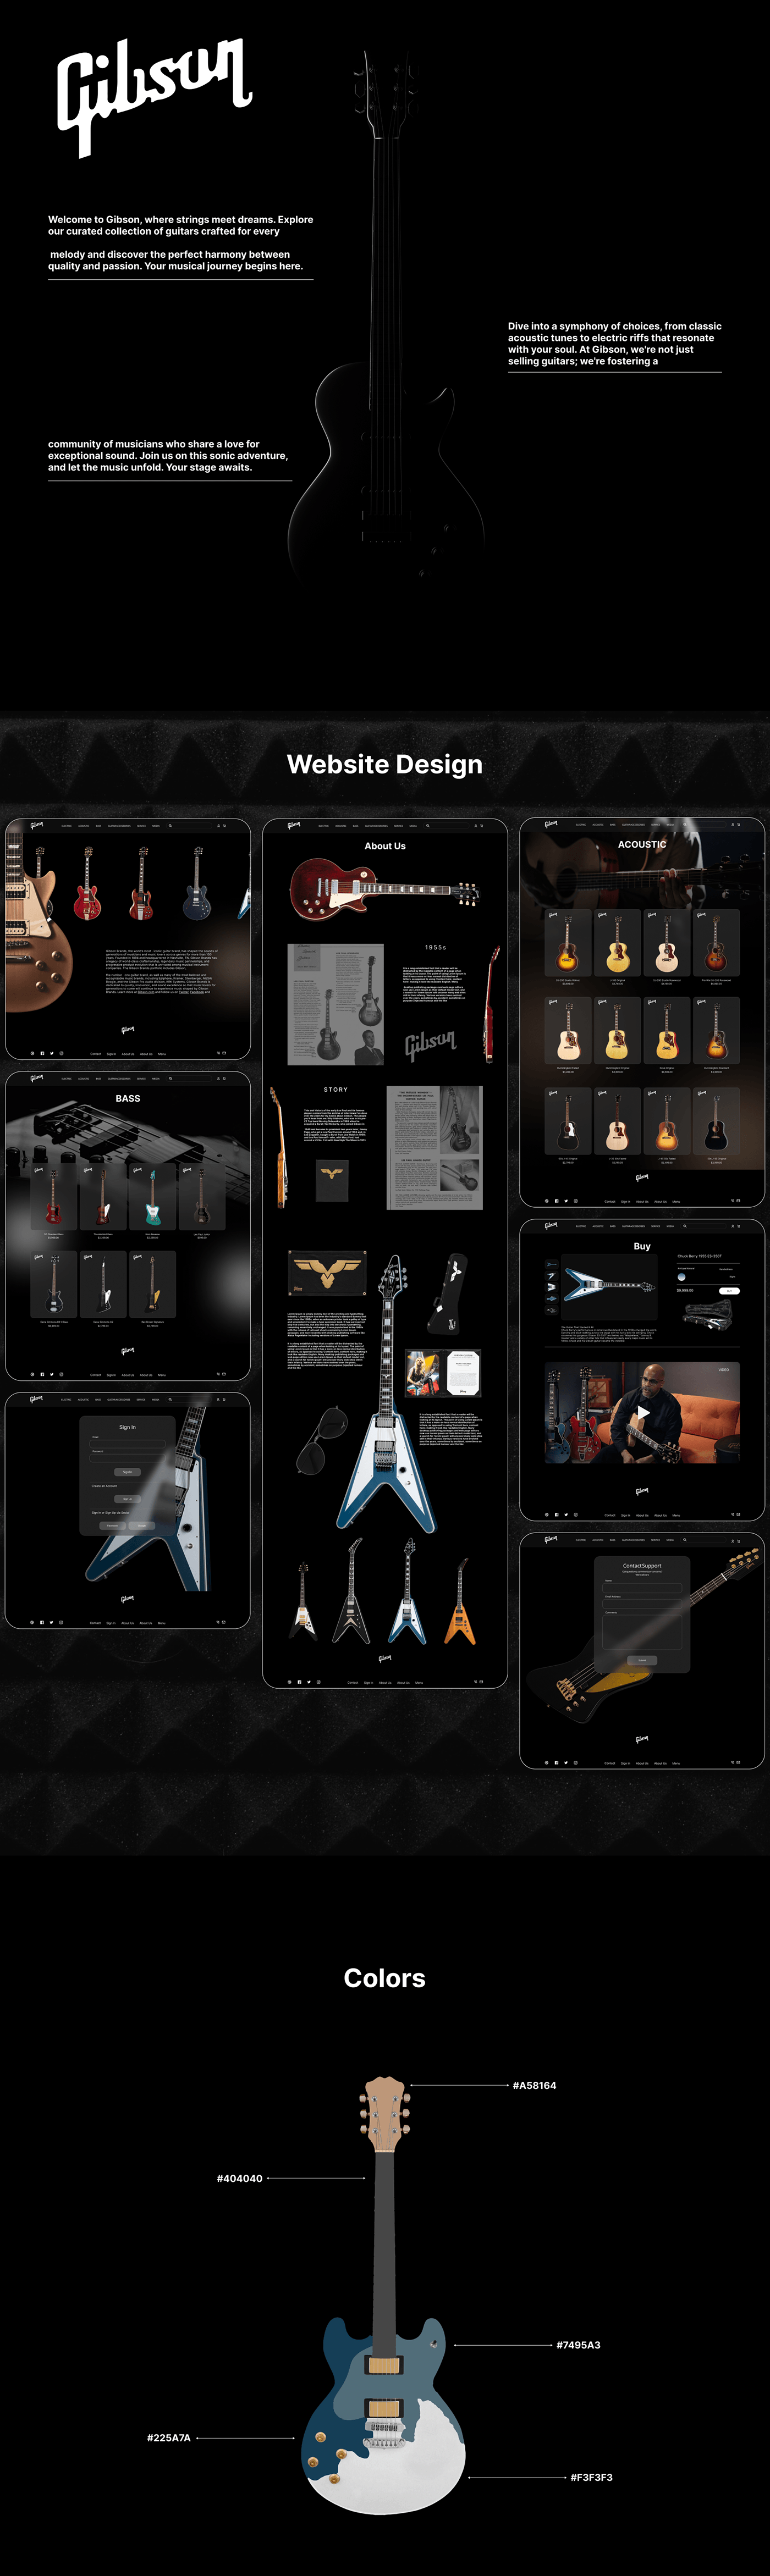 guitar music UI/UX Web Design 